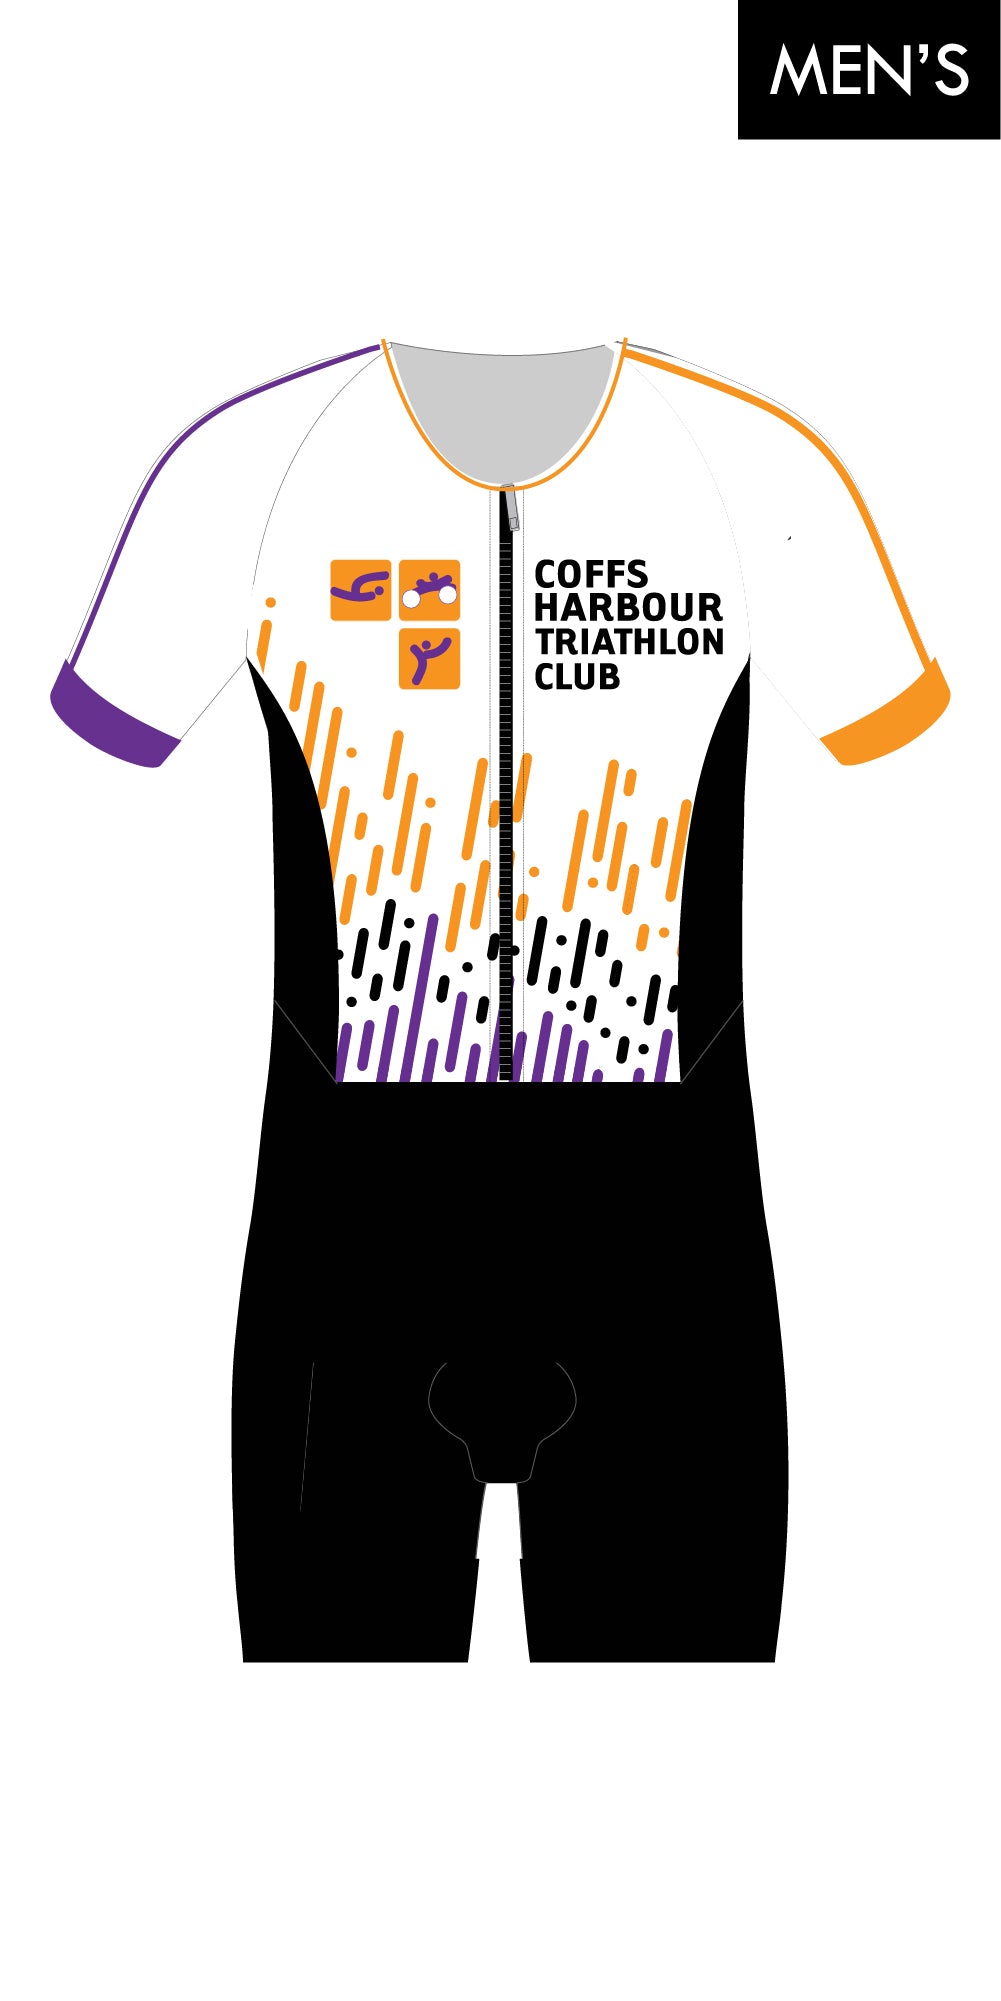 Coffs Harbour Tri Club Sleeve Suit